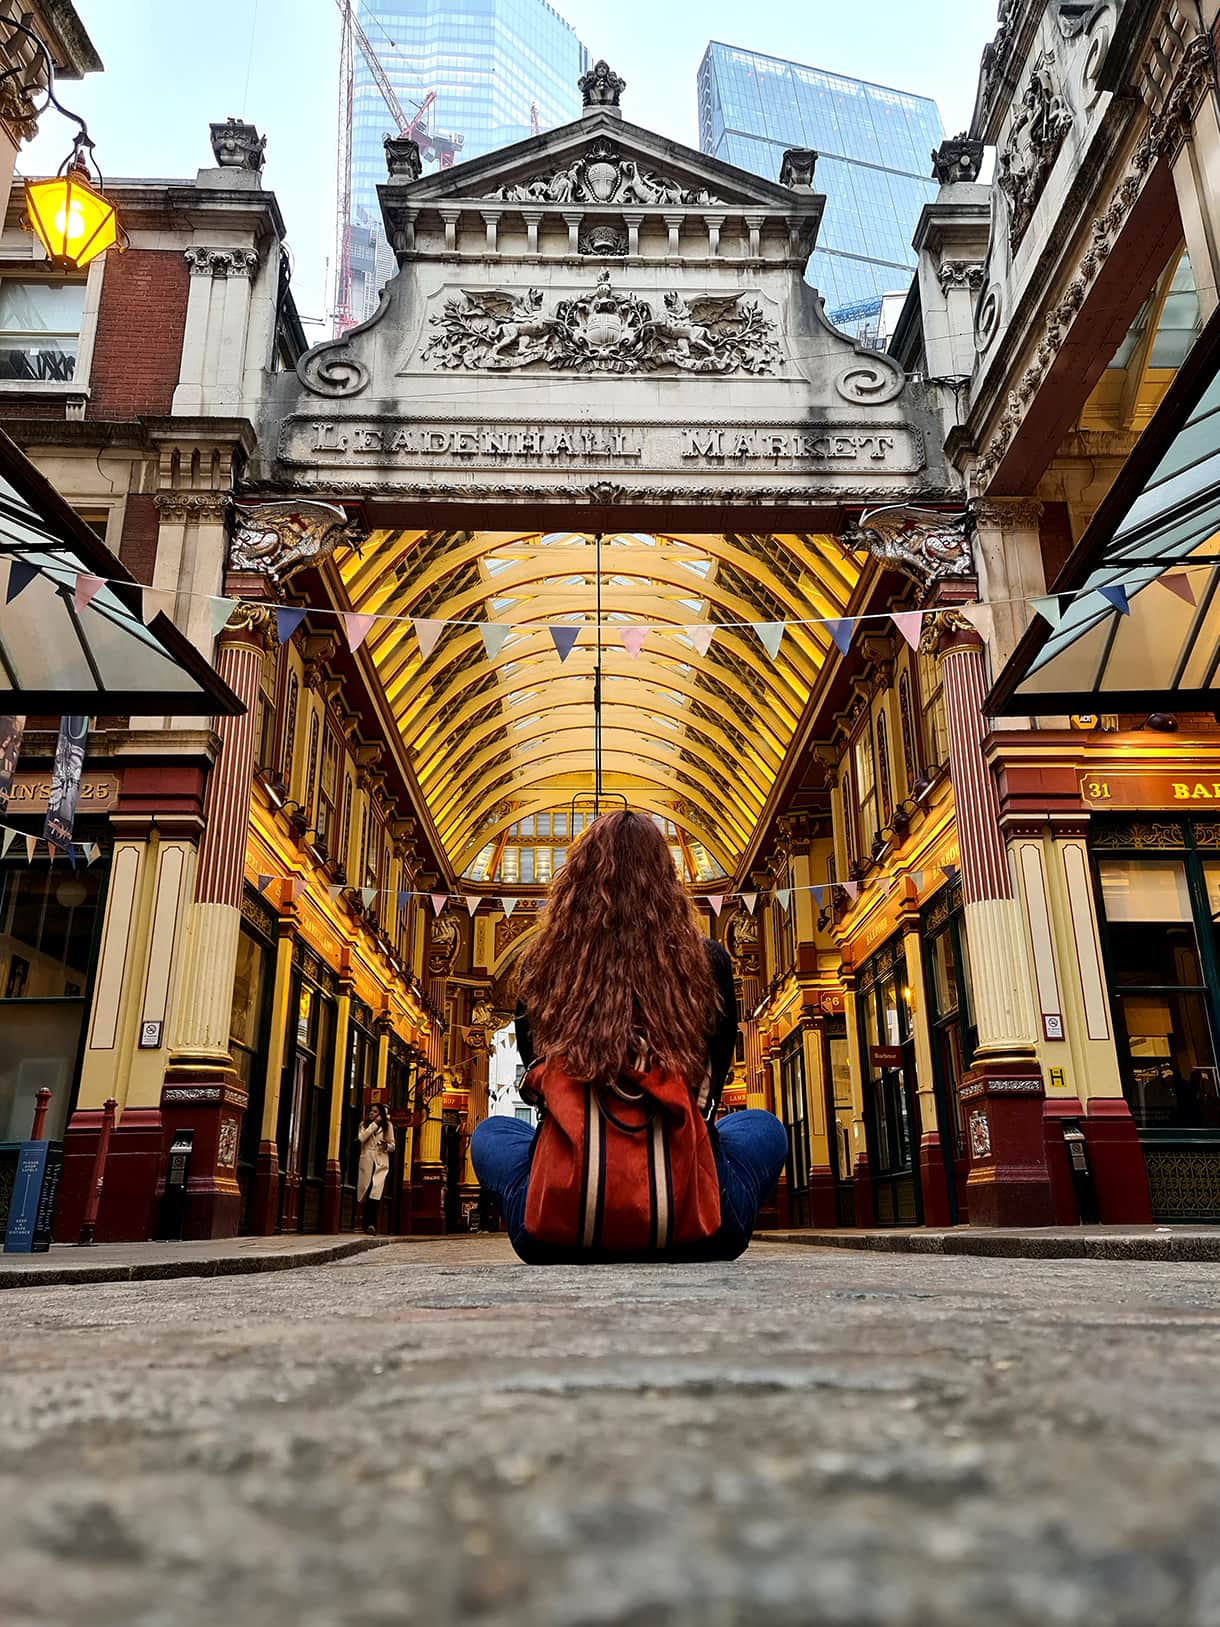 In foto si vede Carlotta di spalle, seduta per terra mentre guarda verso il Leadenhall Market, il primo dei luoghi di Harry Potter a Londra, caratterizzato da uno stile vittoriano, con una cupola vetrata e tante luci calde.